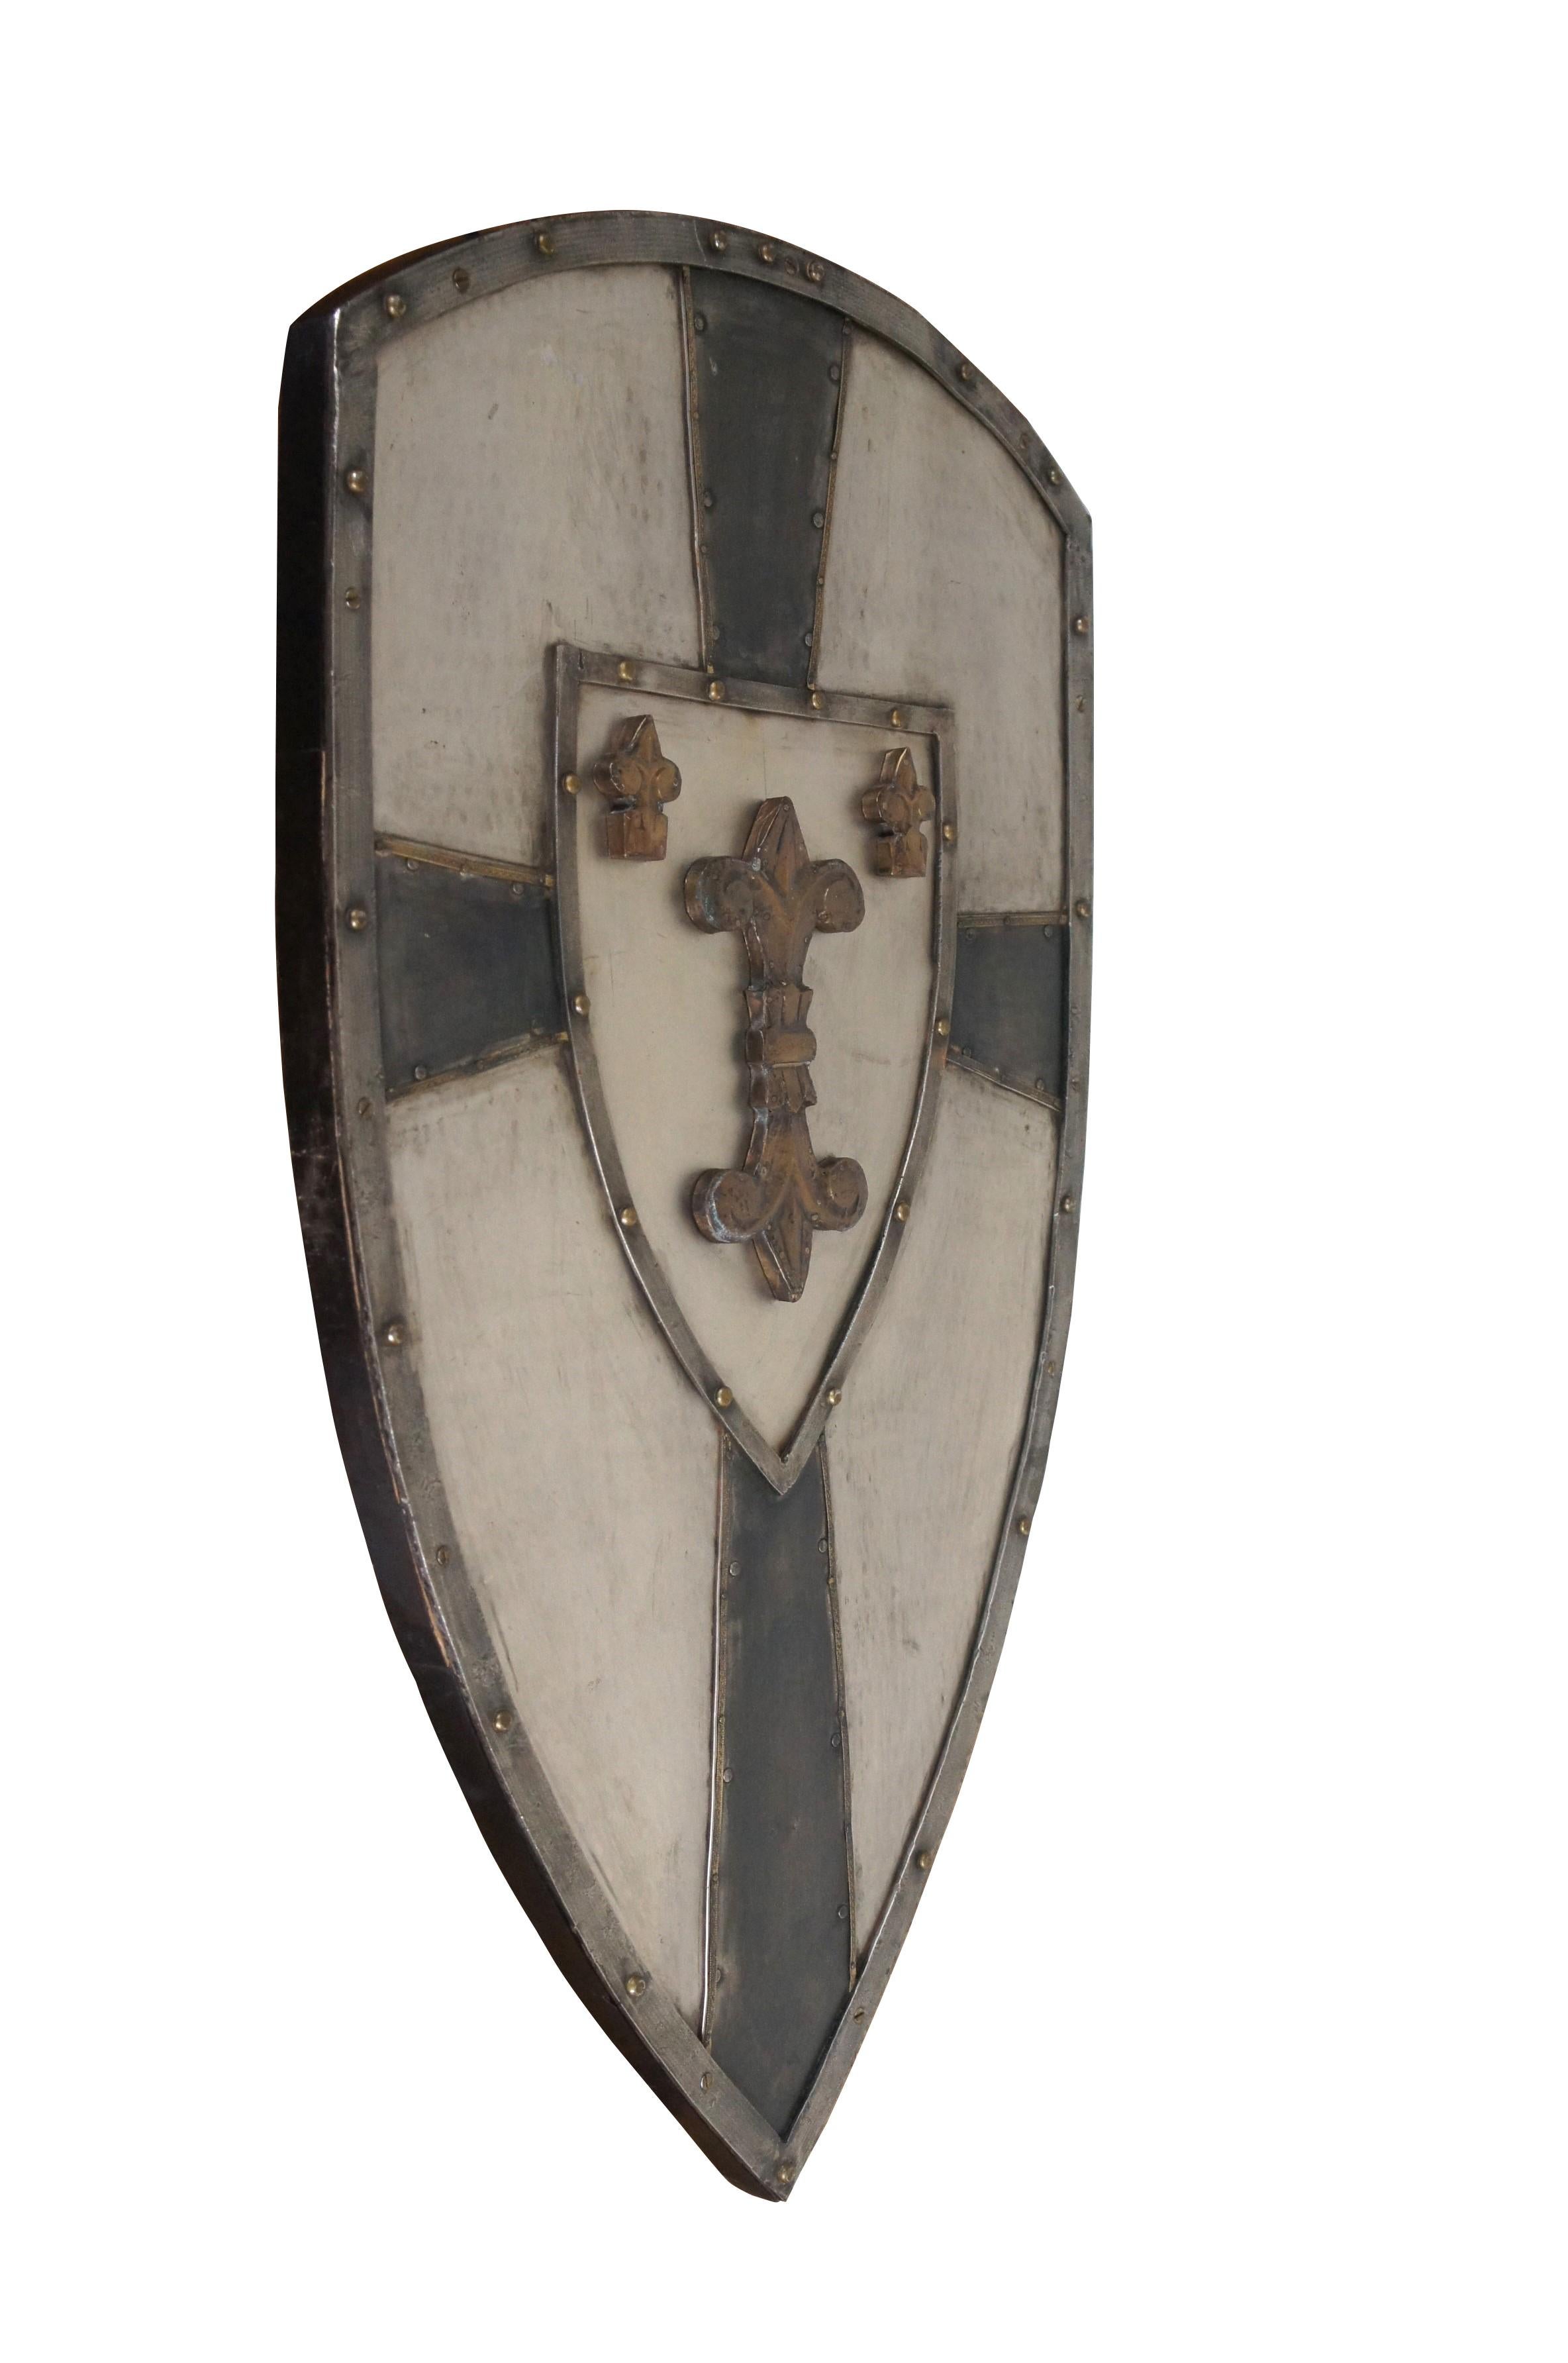 Ecusson héraldique vintage de croisé / chevalier médiéval inspiré de l'époque de Charlemagne. Cadre en bois surmonté de métal martelé, divisé par une croix de croisade noire autour d'un motif central d'une grande fleur de lis en miroir flanquée de